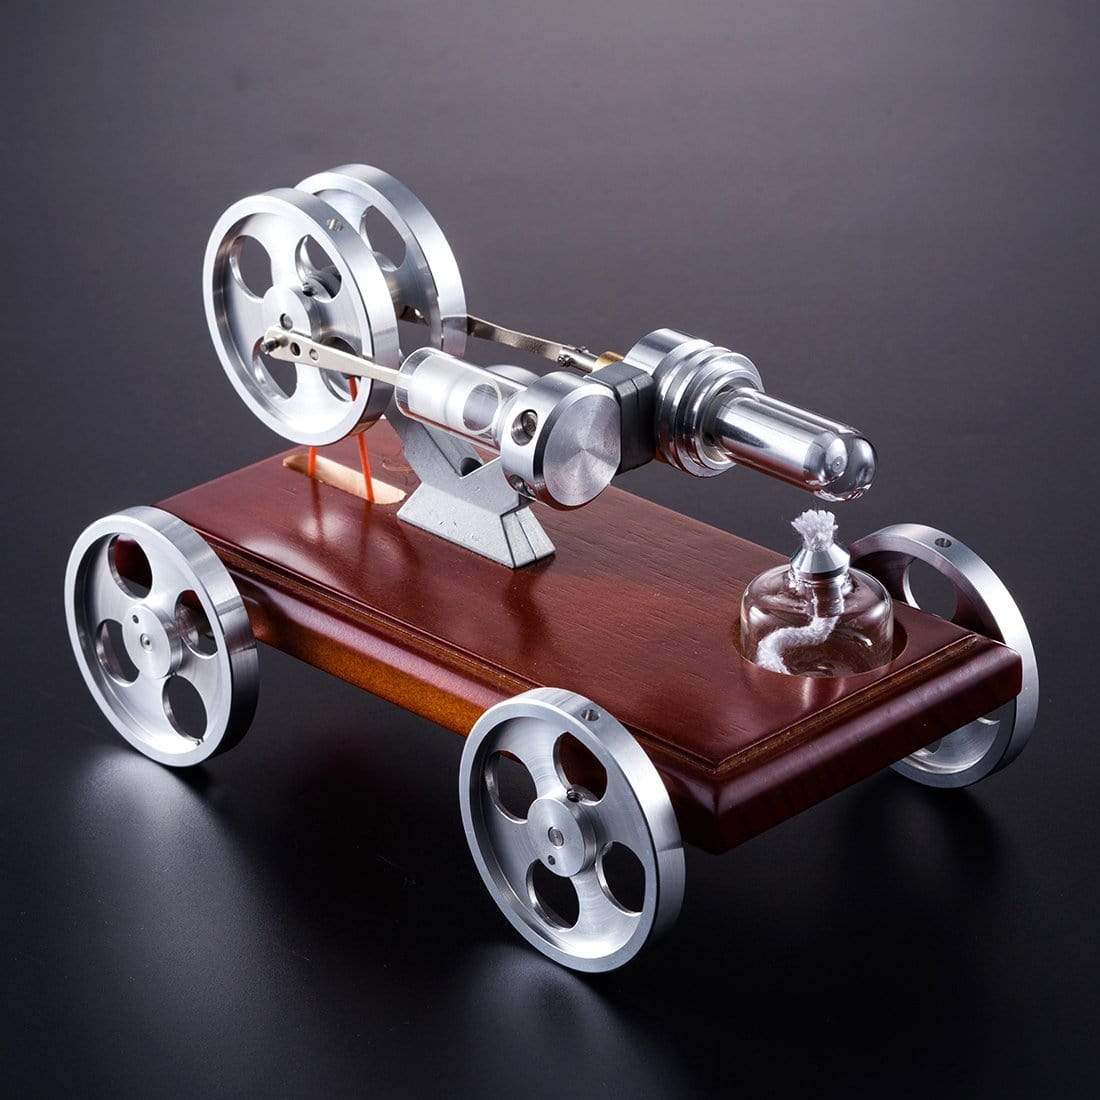 Stirling Engine Kit DIY Stirling Engine Car Model Kit With Solid Wood Baseplate 1